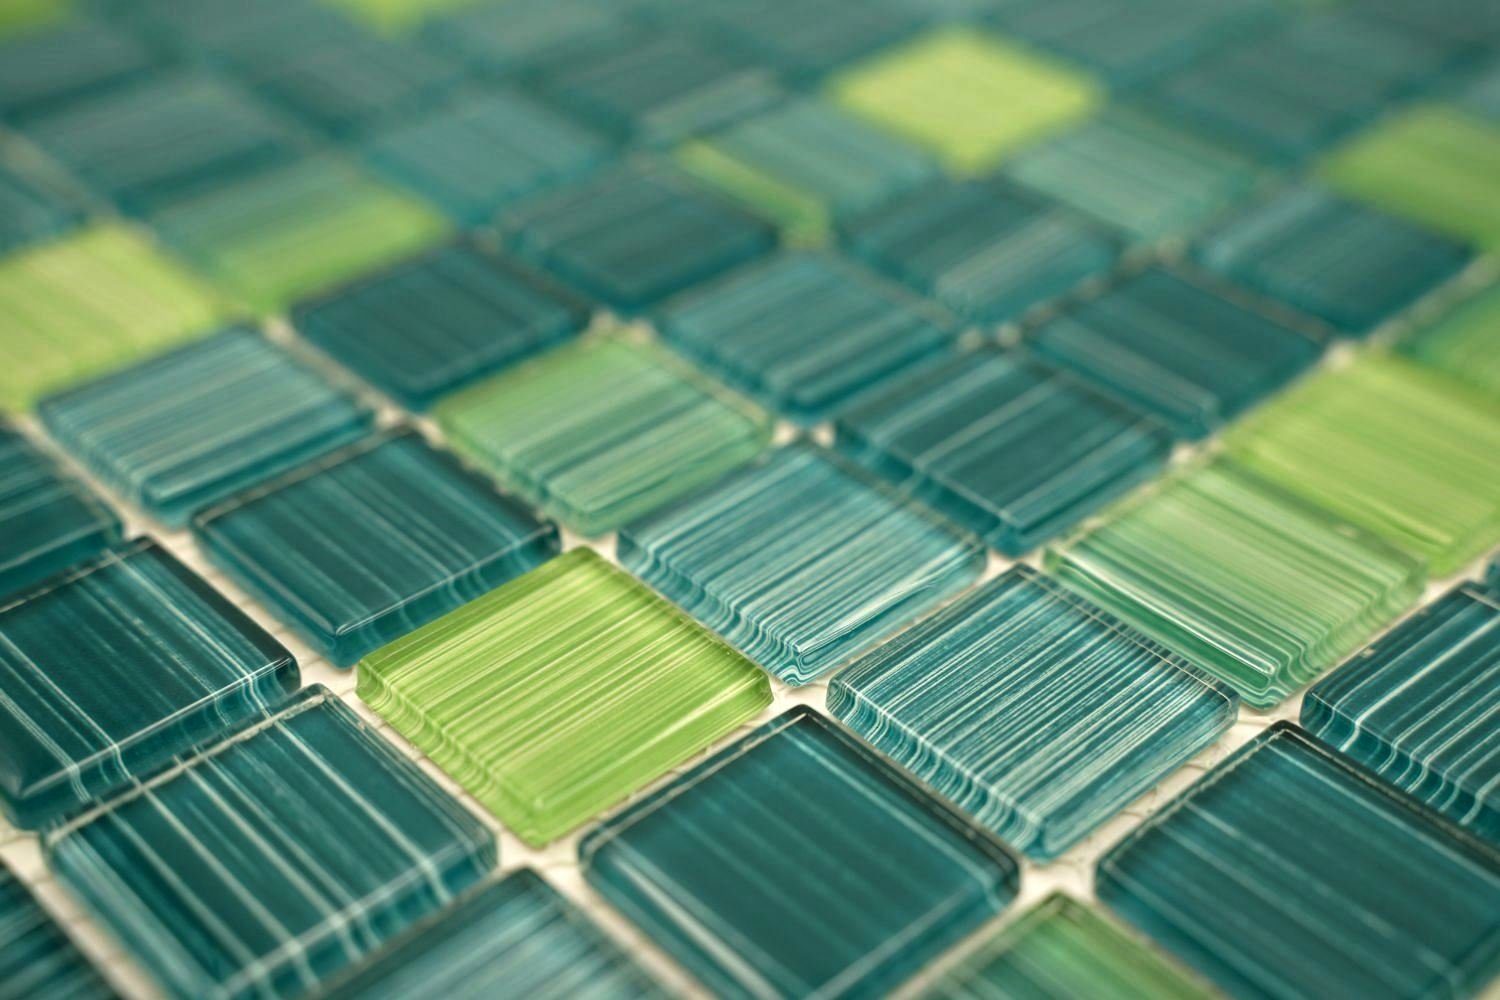 Mosaikfliesen Mosani grün Schwimmbadmosaik türkis gelb Strich Mosaikfliesen Glasmosaik